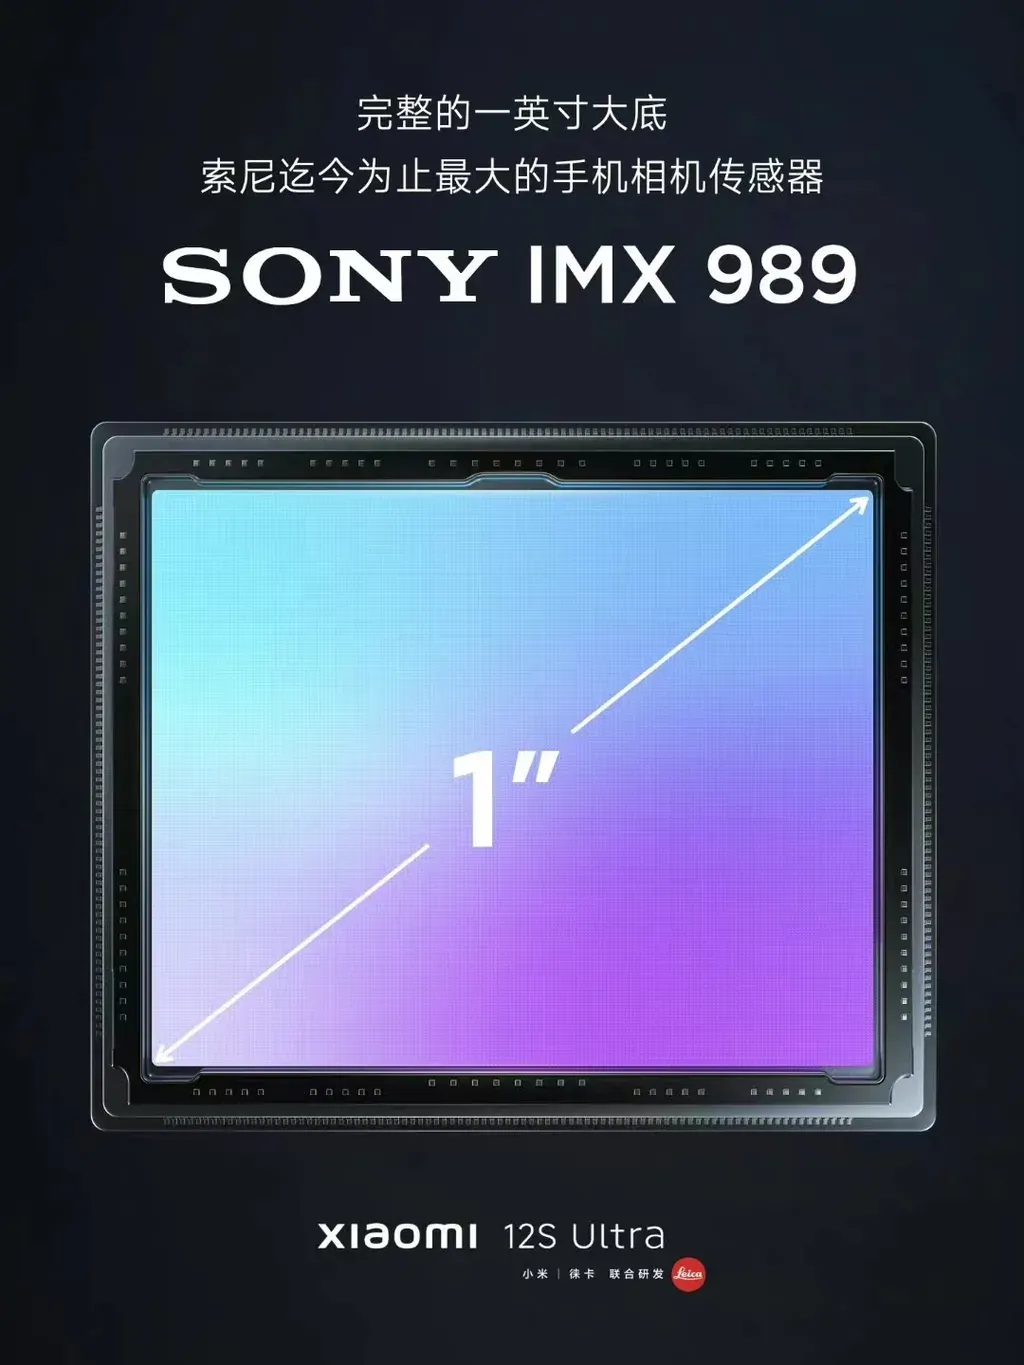 O Sensor do Xiaomi 12S Ultra será o maior do mercado - Xiaomi 12S Ultra contará com sensor IMX989 da Sony de 1 polegada